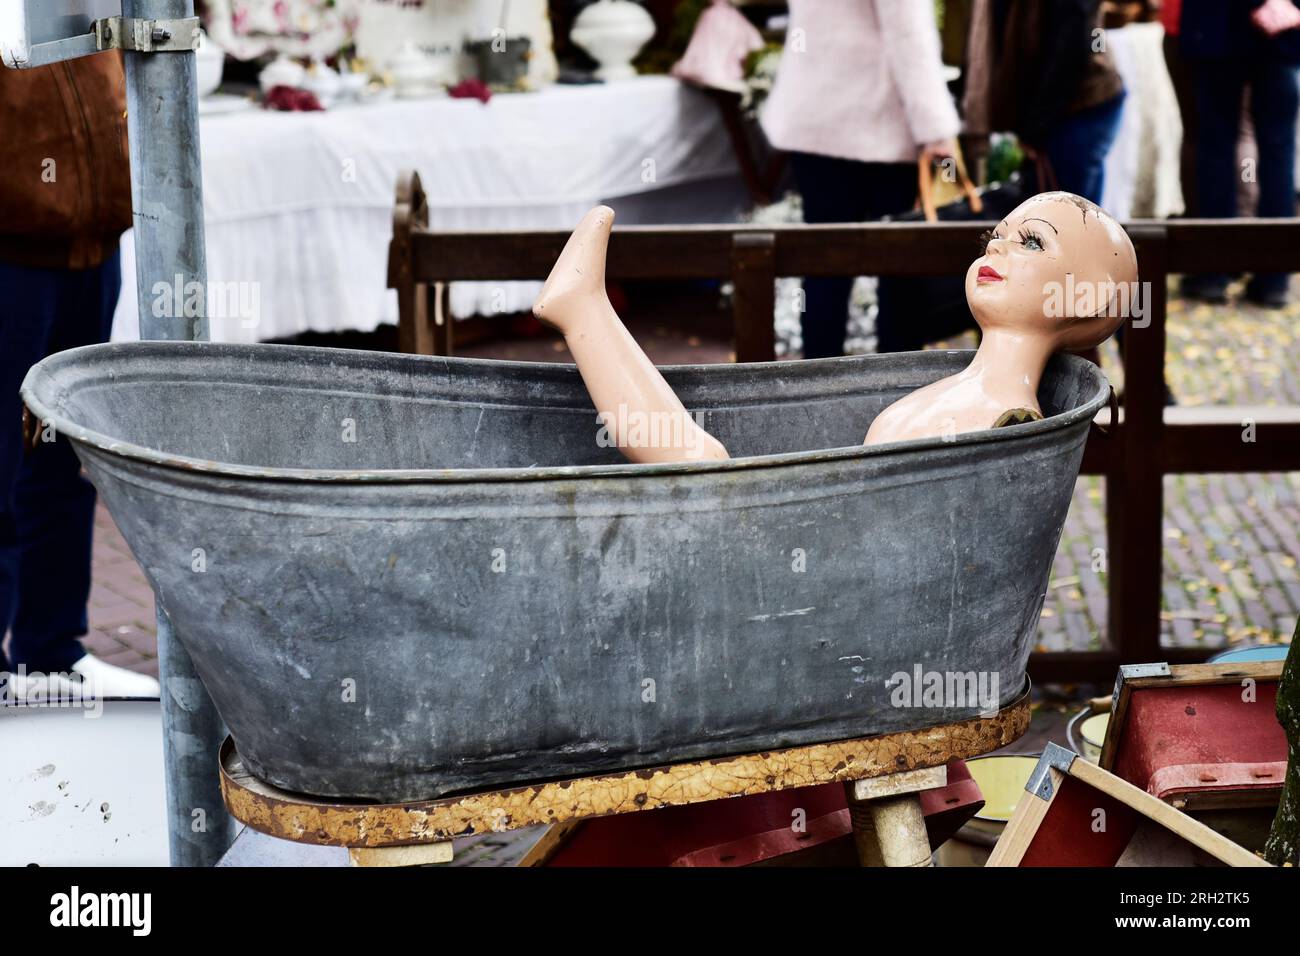 Dans un marché aux puces, une poupée féminine se trouve dans une position gracieuse dans une baignoire en zinc. Les deux sont à vendre Banque D'Images